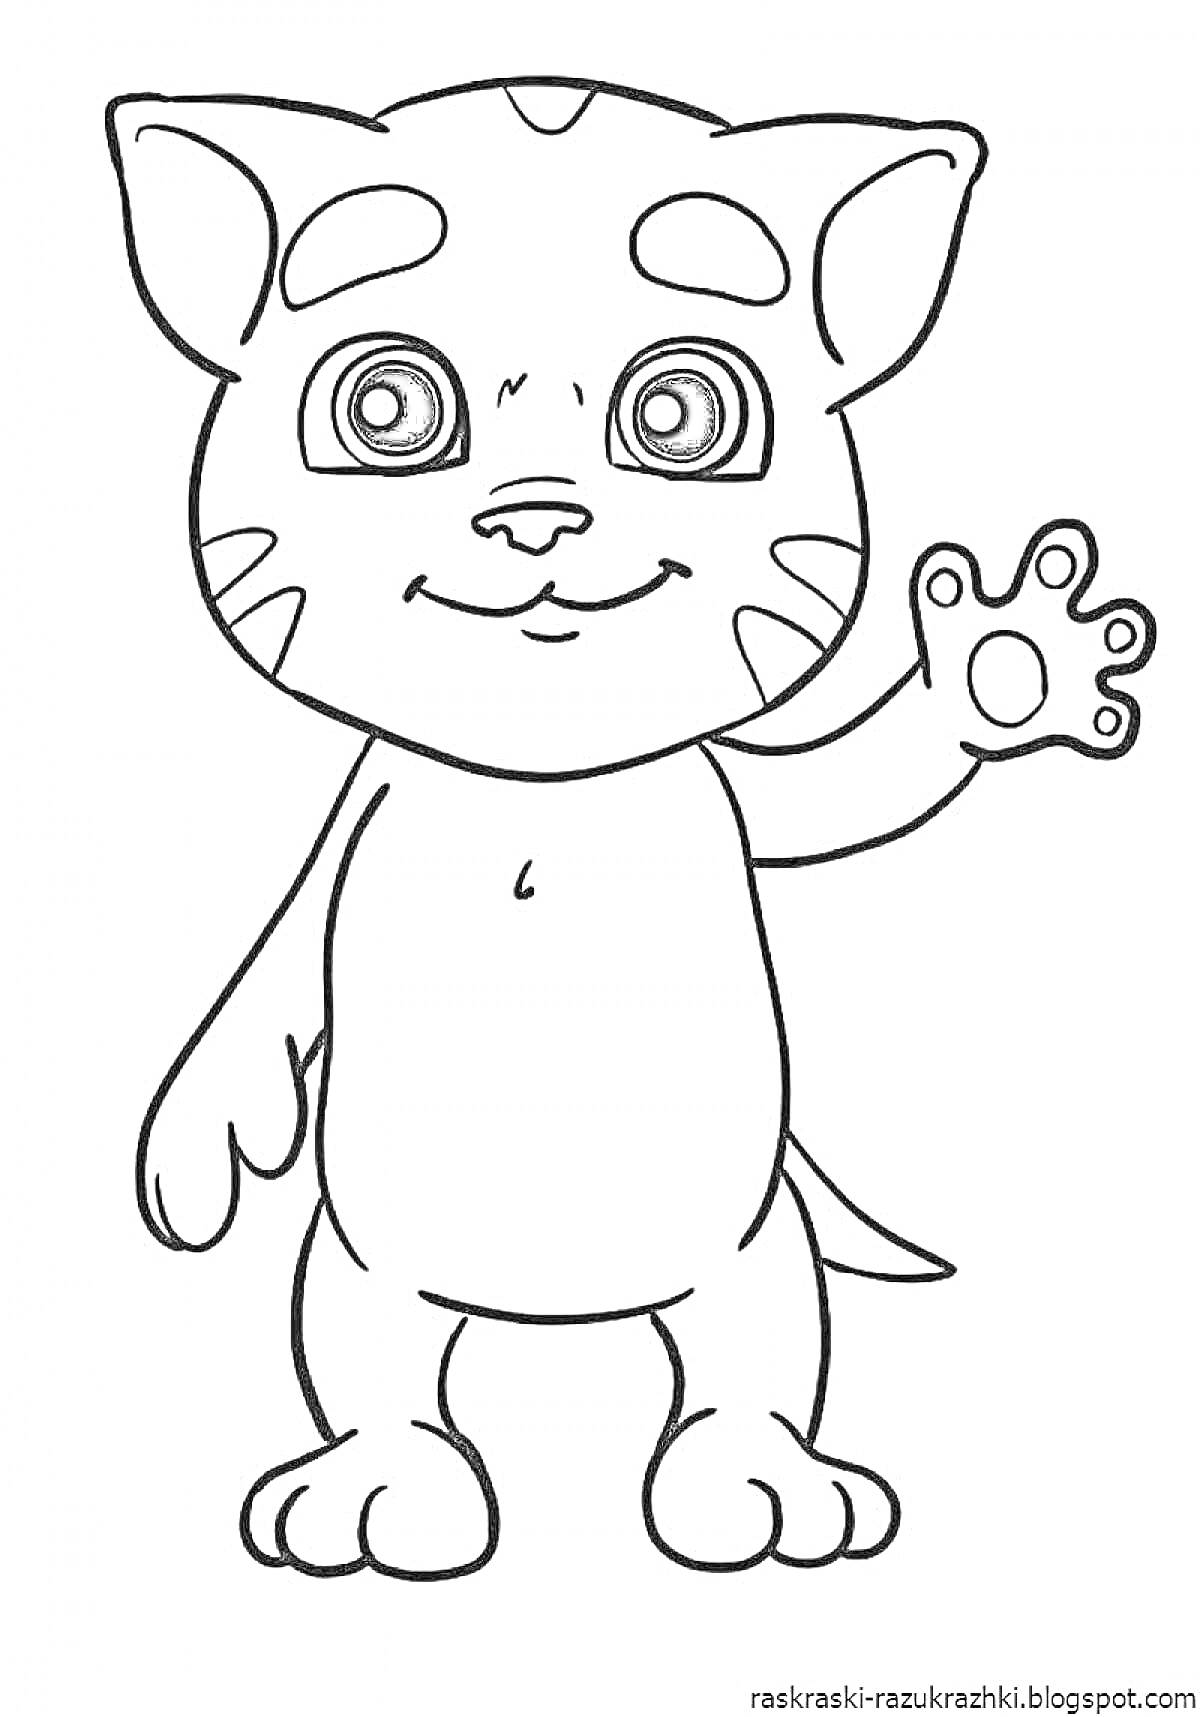 Раскраска Кот с полосками и большими глазами, поднимающий подушечку лапки